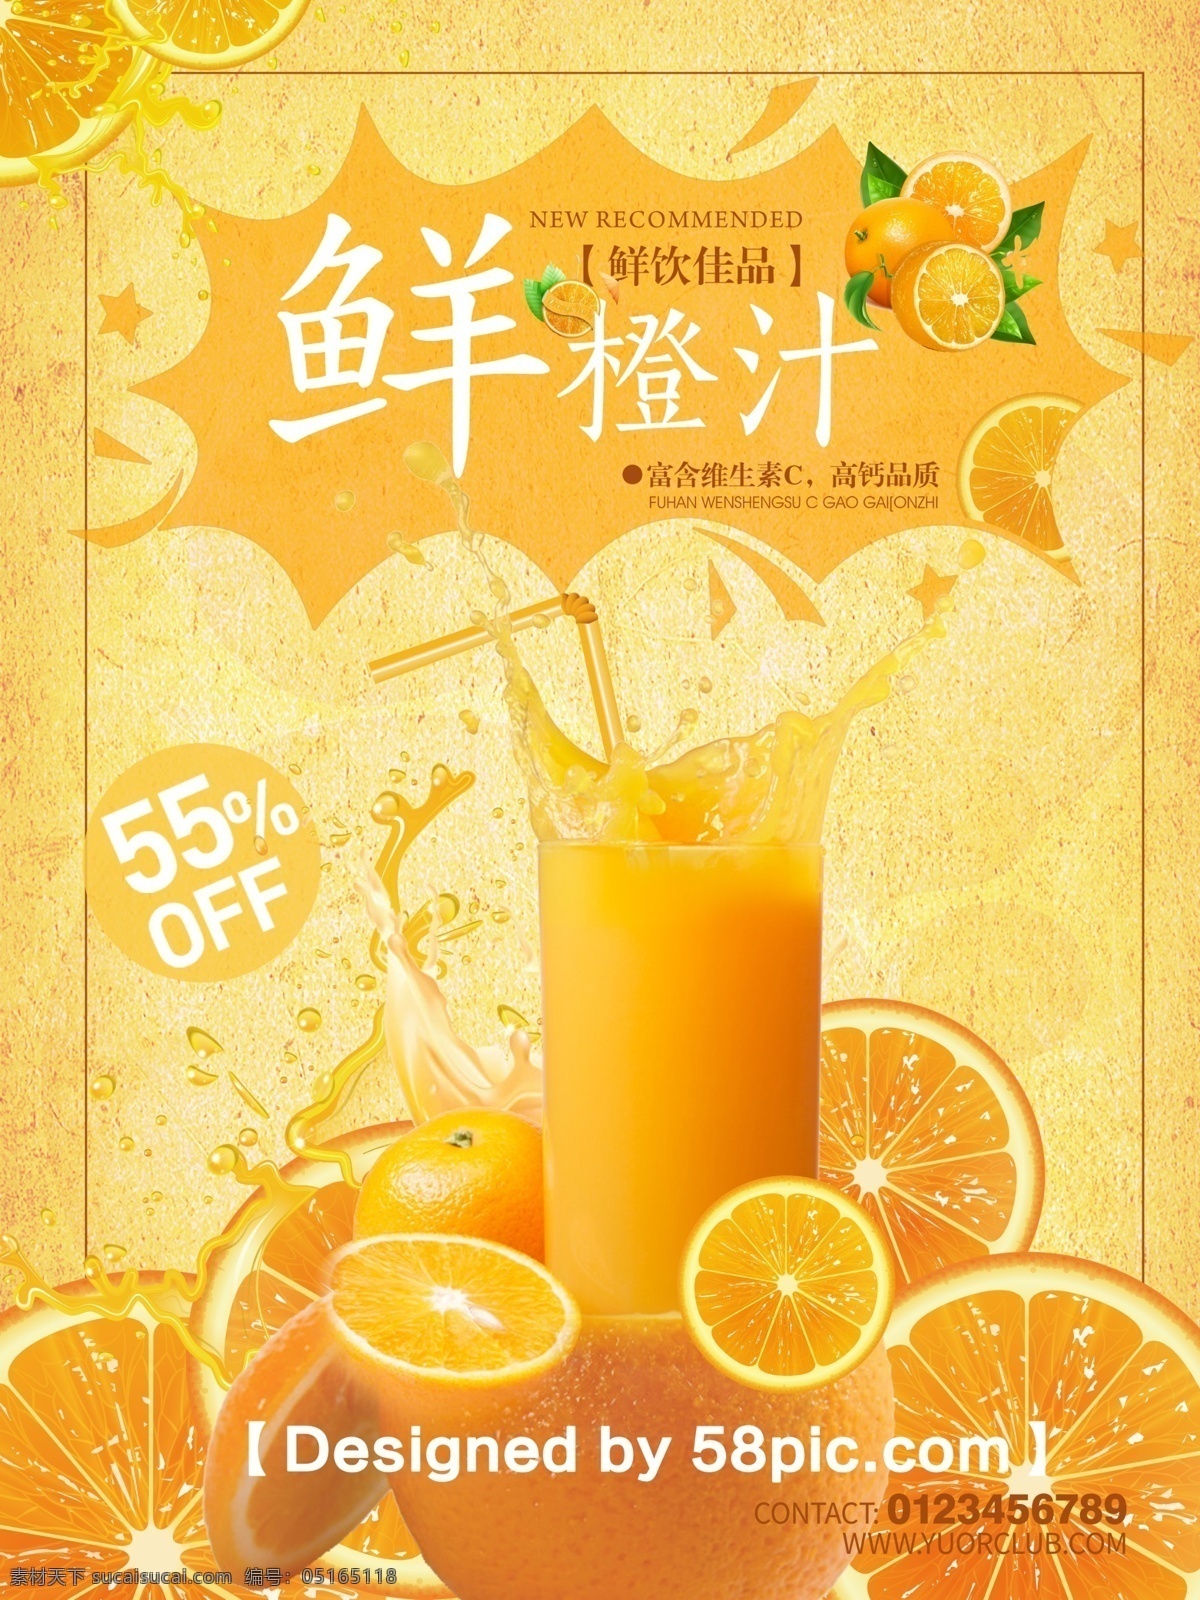 创意 美食 鲜橙汁 饮料 海报 饮料海报设计 psd素材 橙子素材 饮料促销 新品上市 暖黄色背景 广告设计模板 清新大气 鲜榨果汁